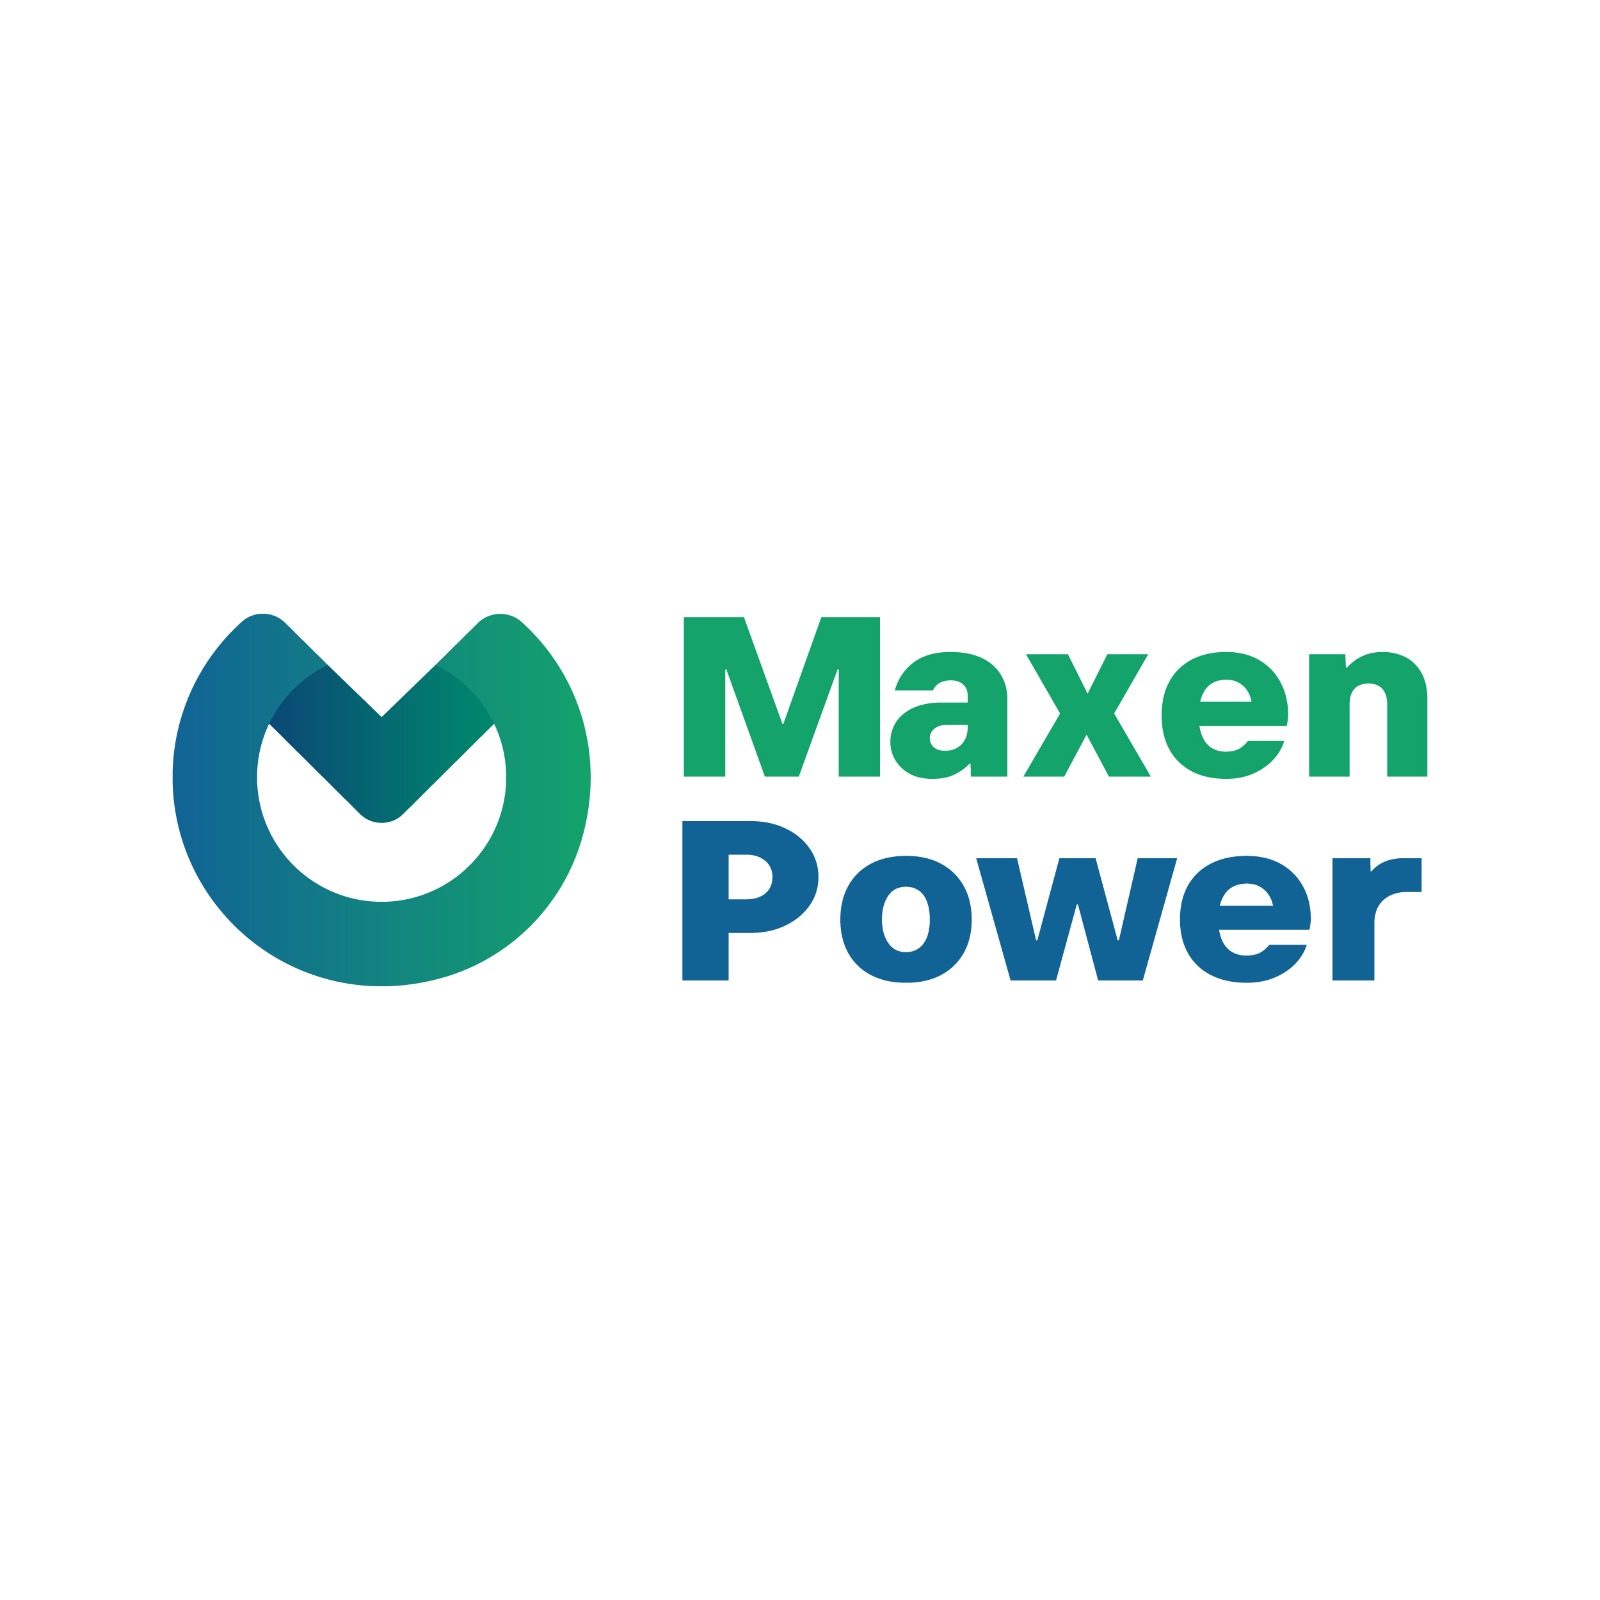 Maxen Power